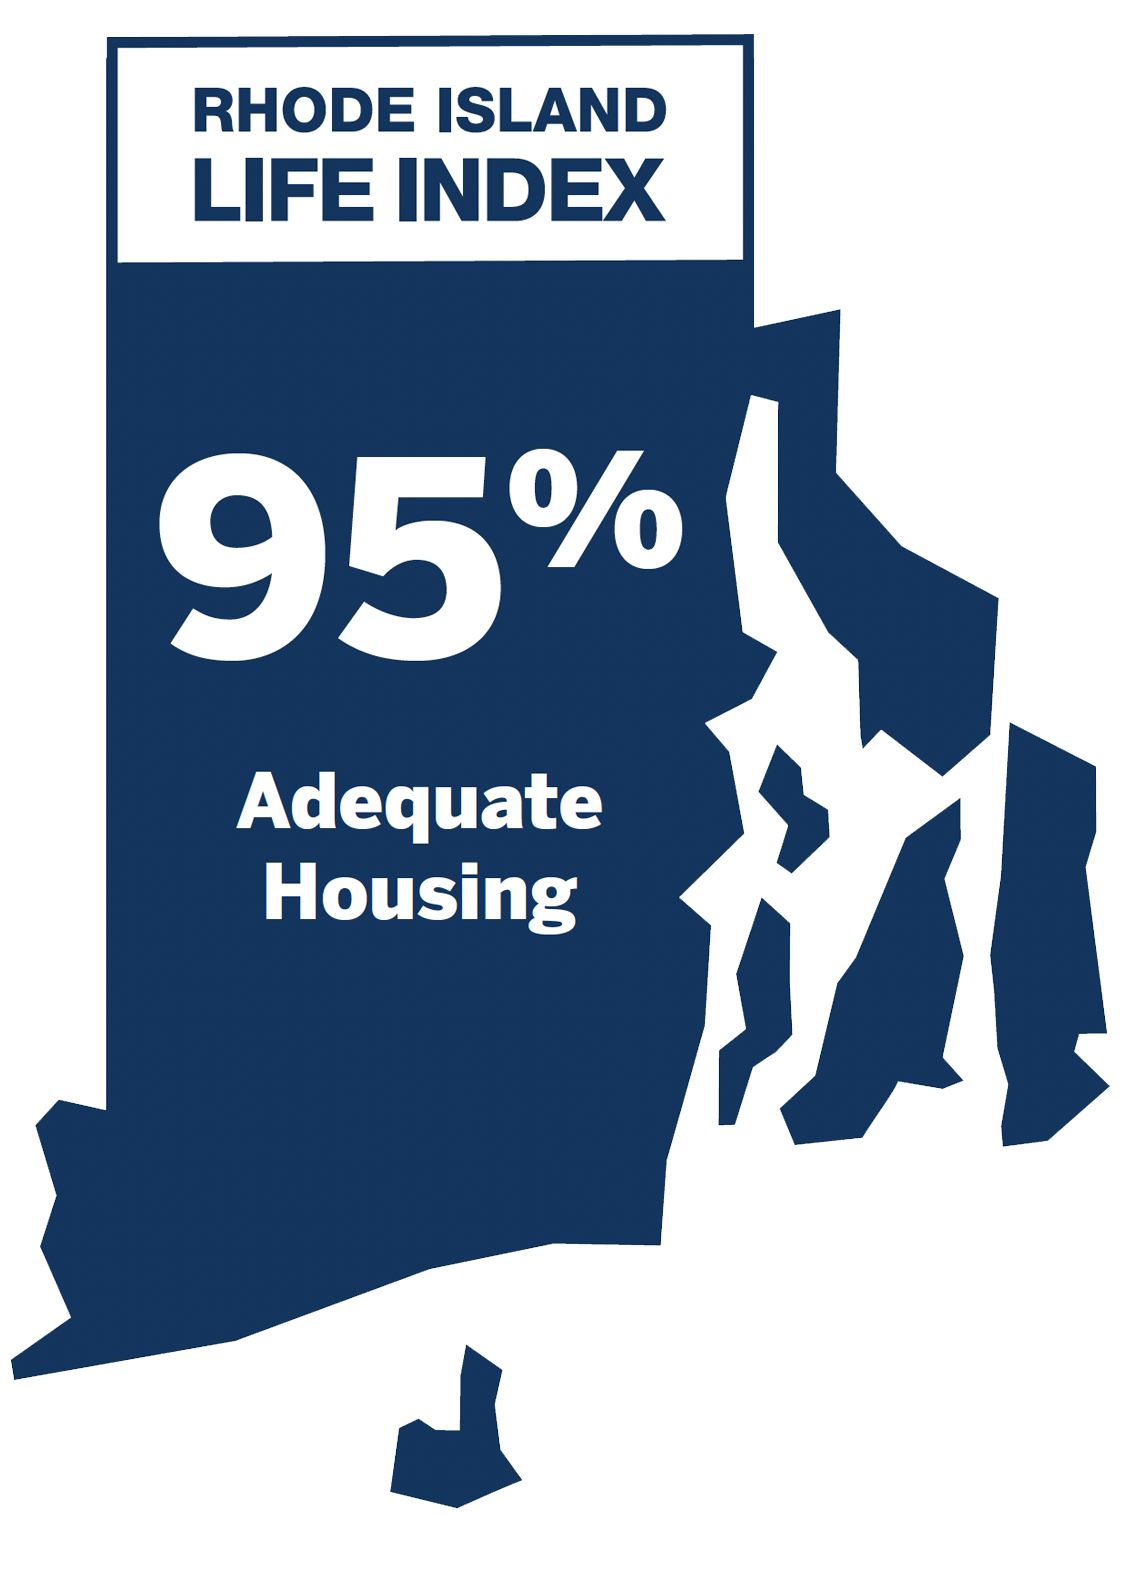 Adequate Housing: 95%